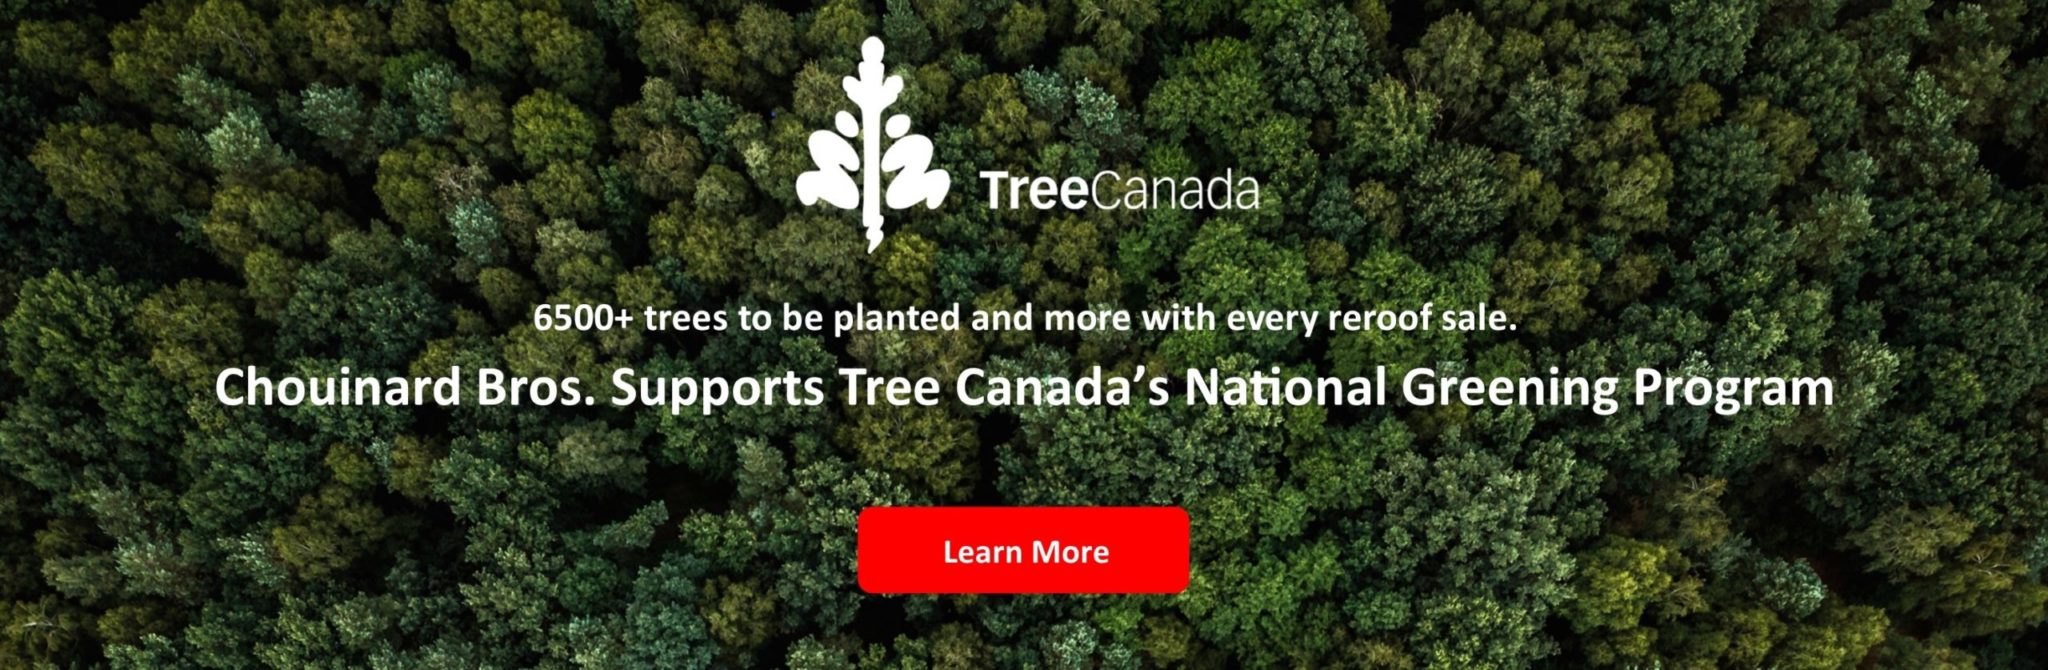 Tree Canada Logo